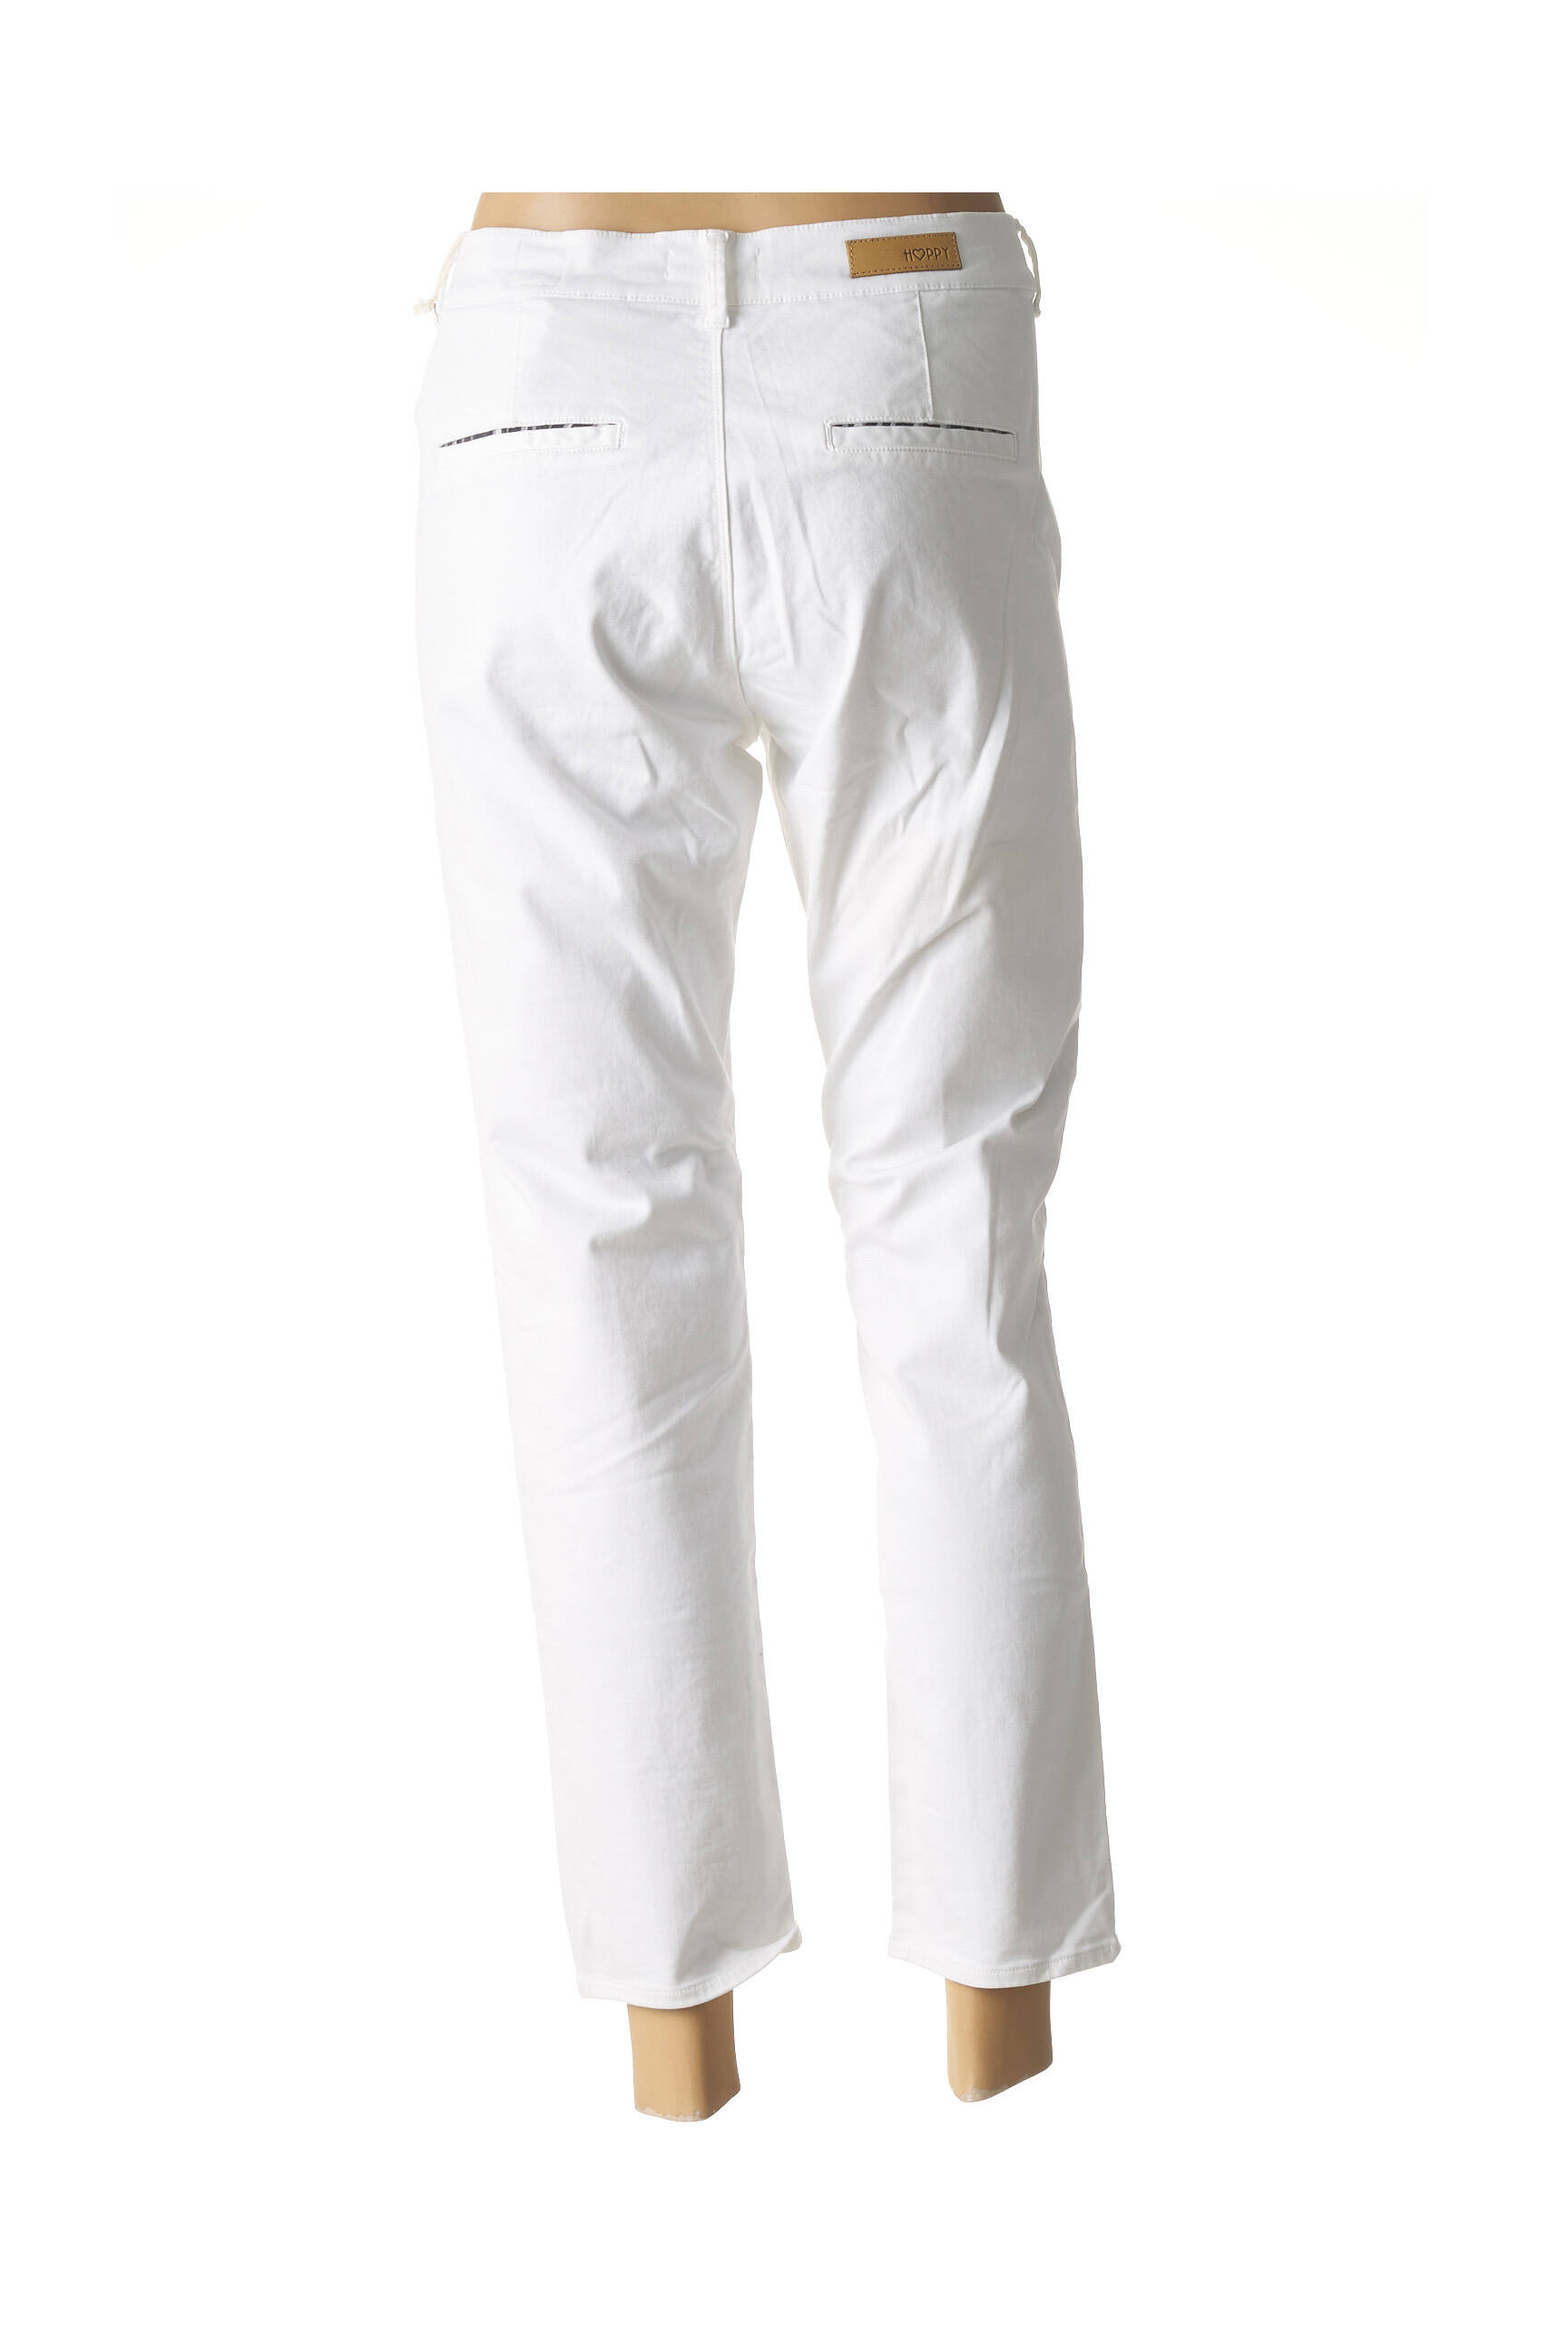 Betty & Co Pantalon 7\/8 blanc style d\u00e9contract\u00e9 Mode Pantalons Pantalons 7/8 